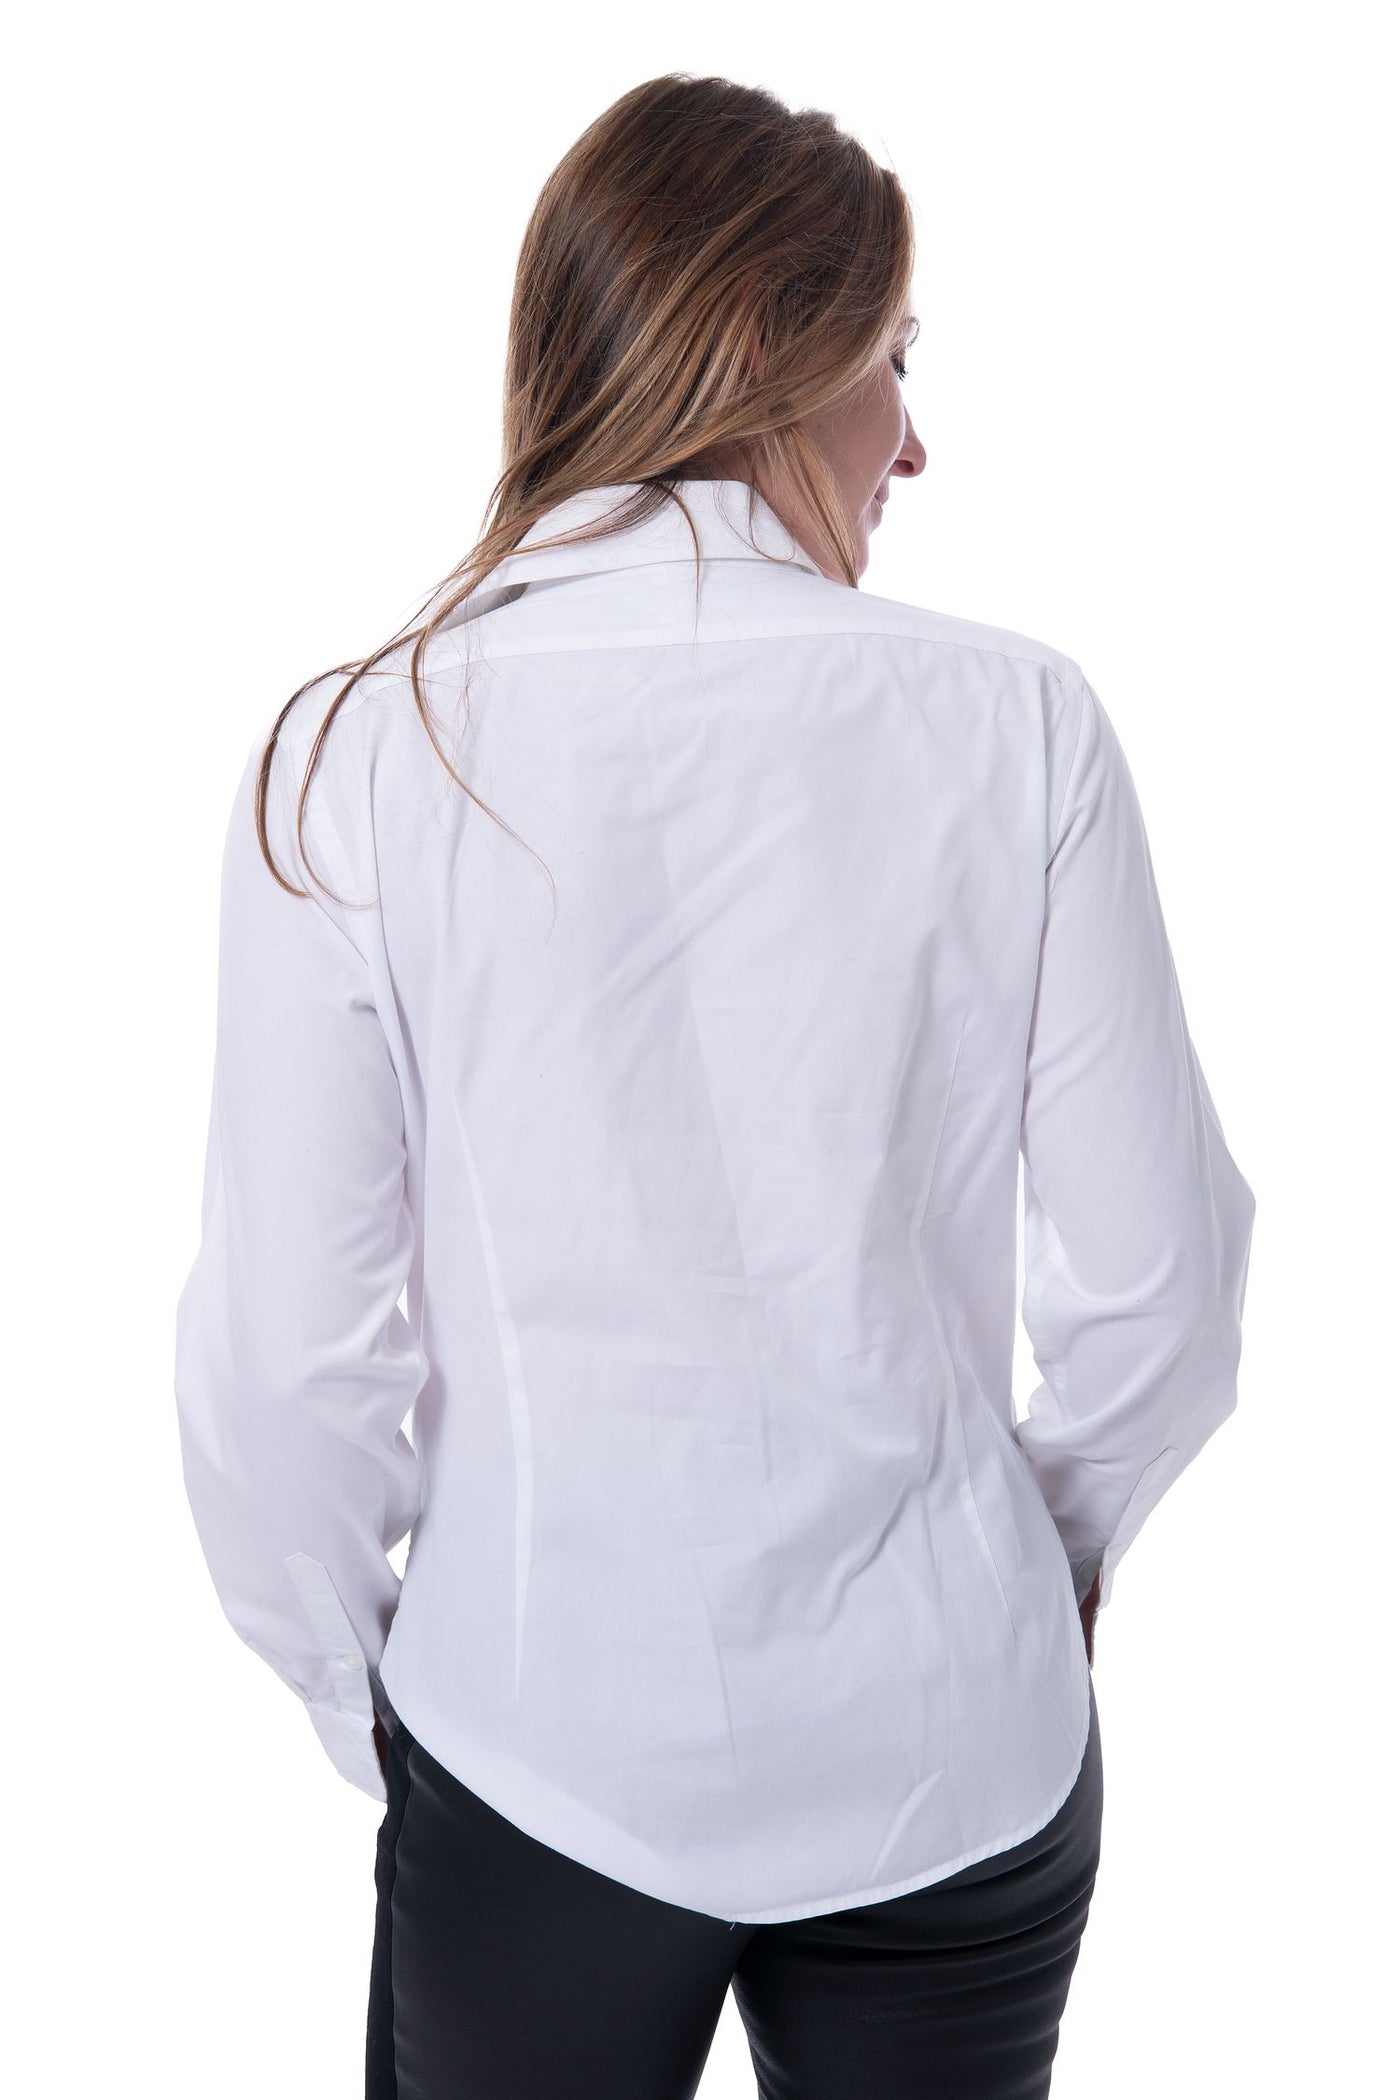 Ralph Lauren white sport shirt